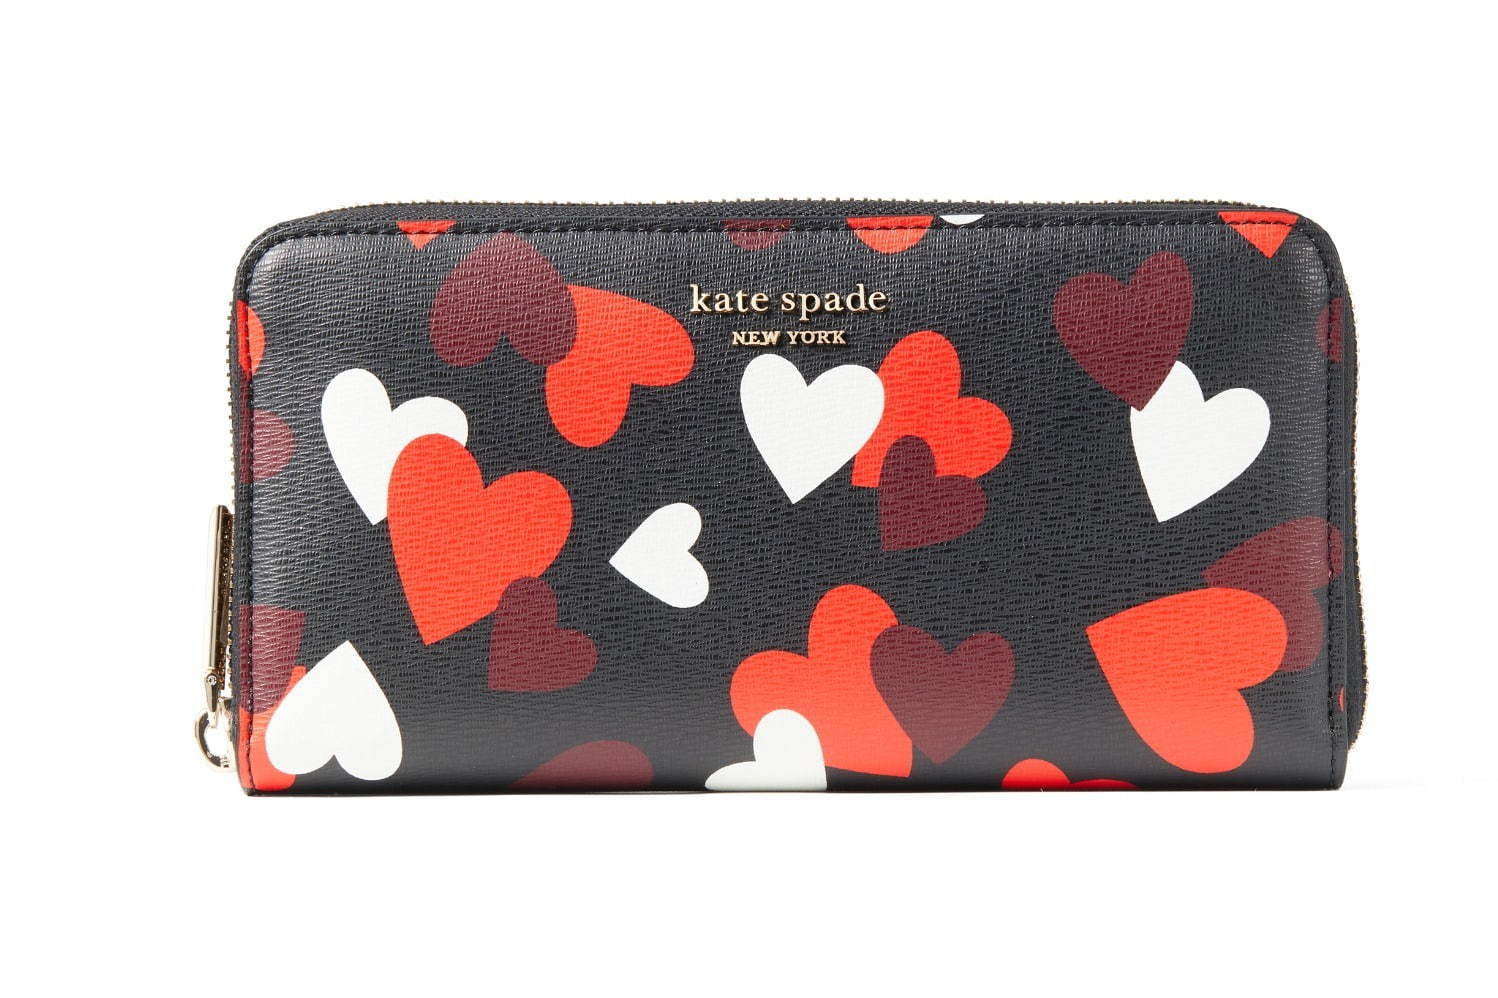 ケイト・スペード2021年バレンタインギフト、“ハート”モチーフの財布